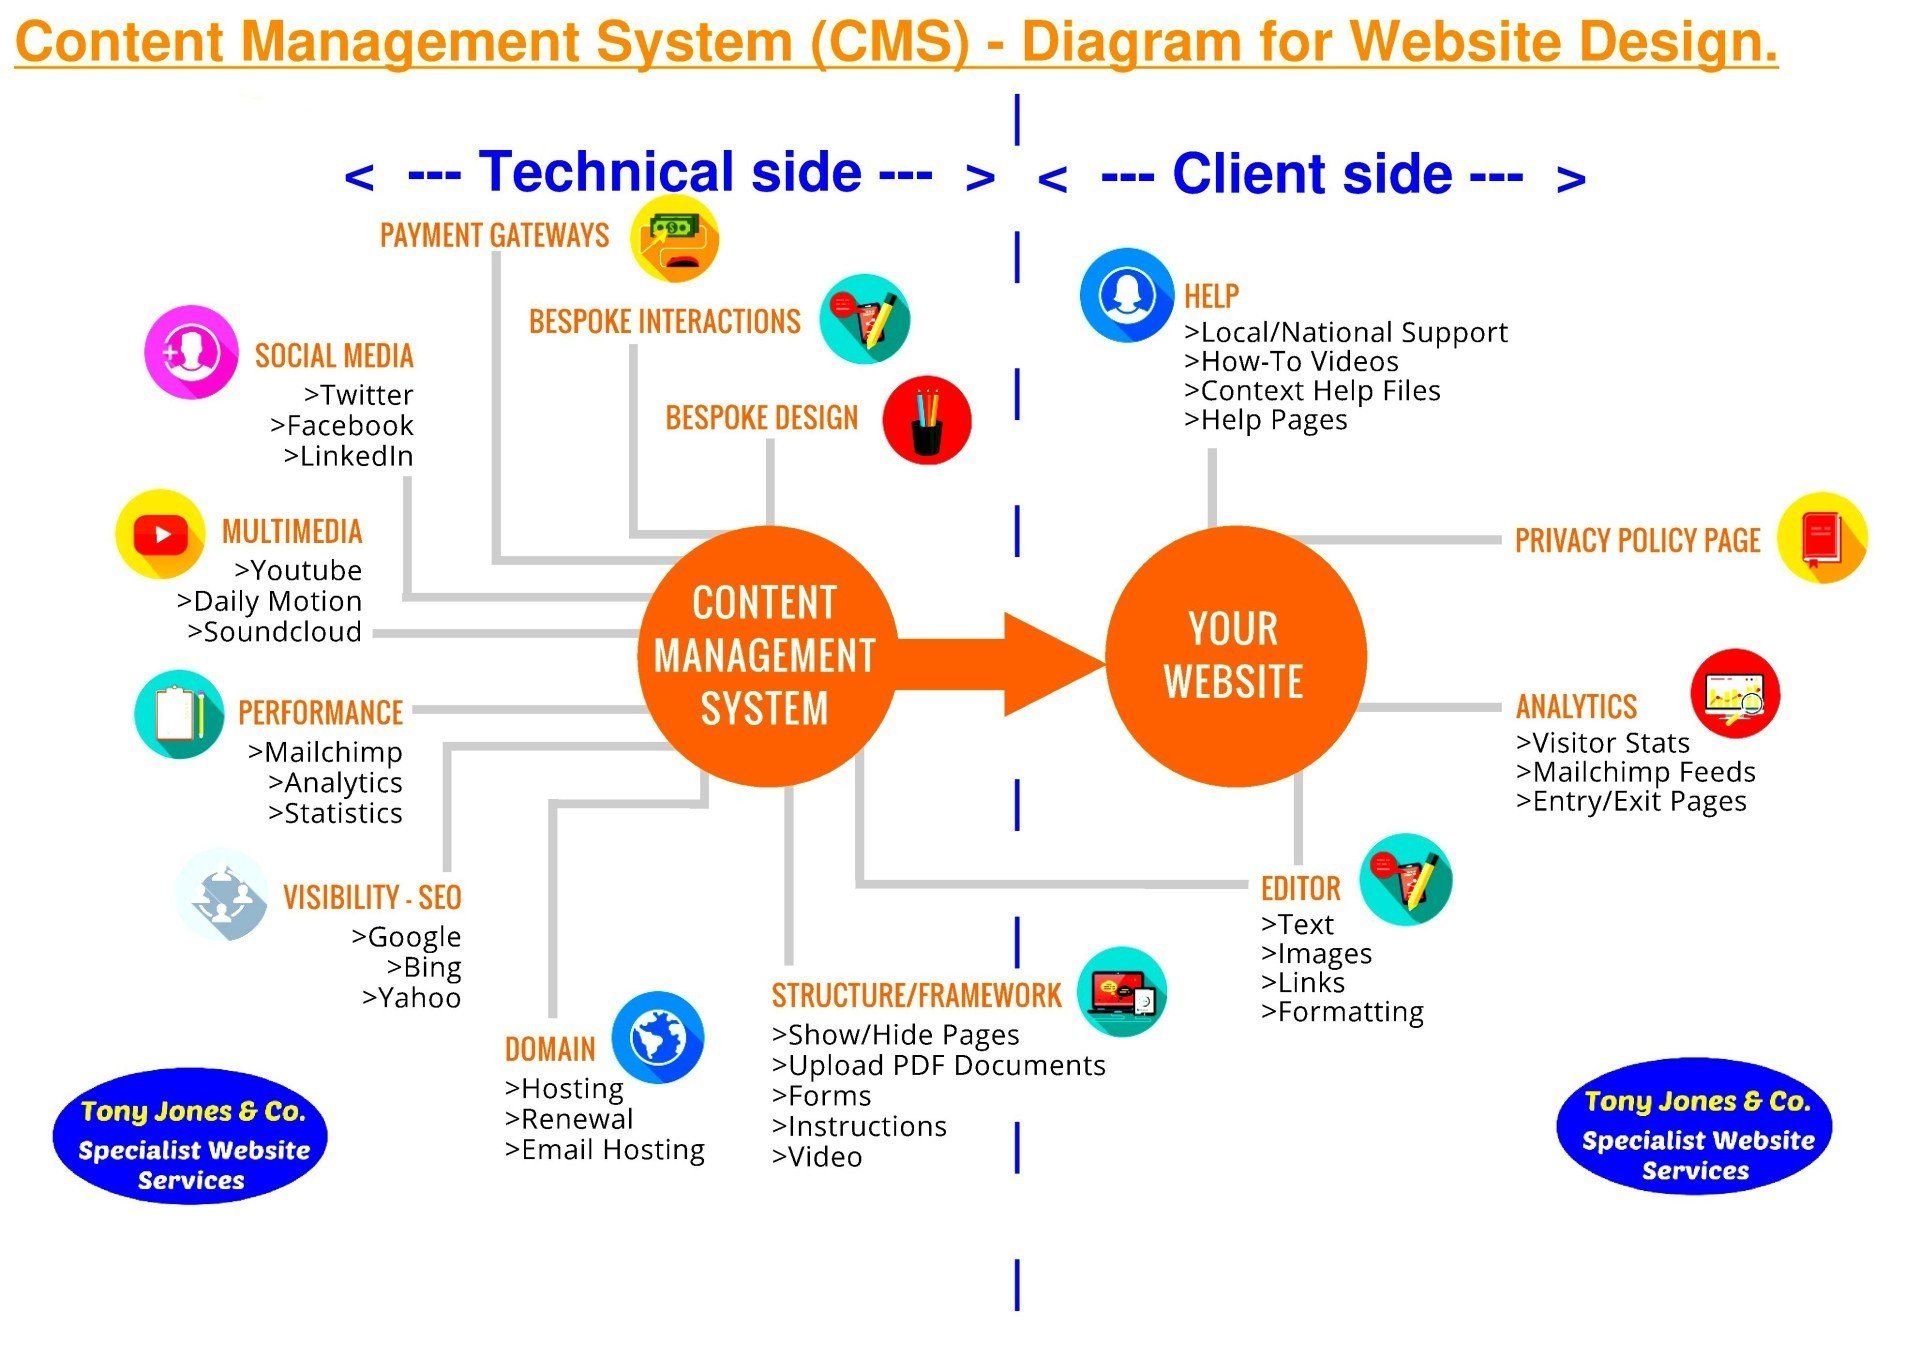 Content Management Diagram showing - Web Design CMS  for Tony Jones & co Websites Wrexham